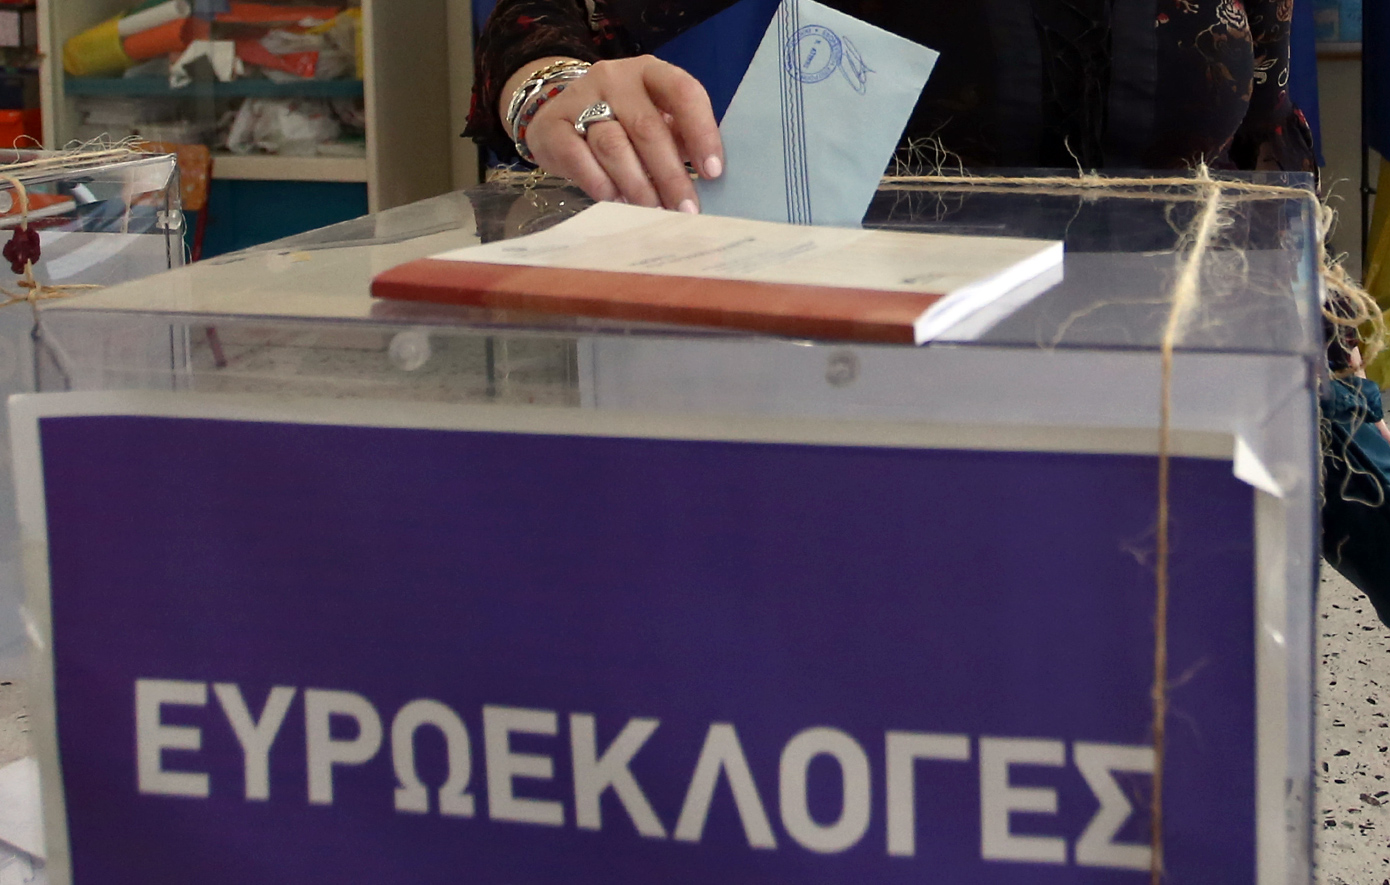 Σε πλήρη ετοιμότητα ο μηχανισμός της Περιφέρειας Αττικής για τις ευρωεκλογές